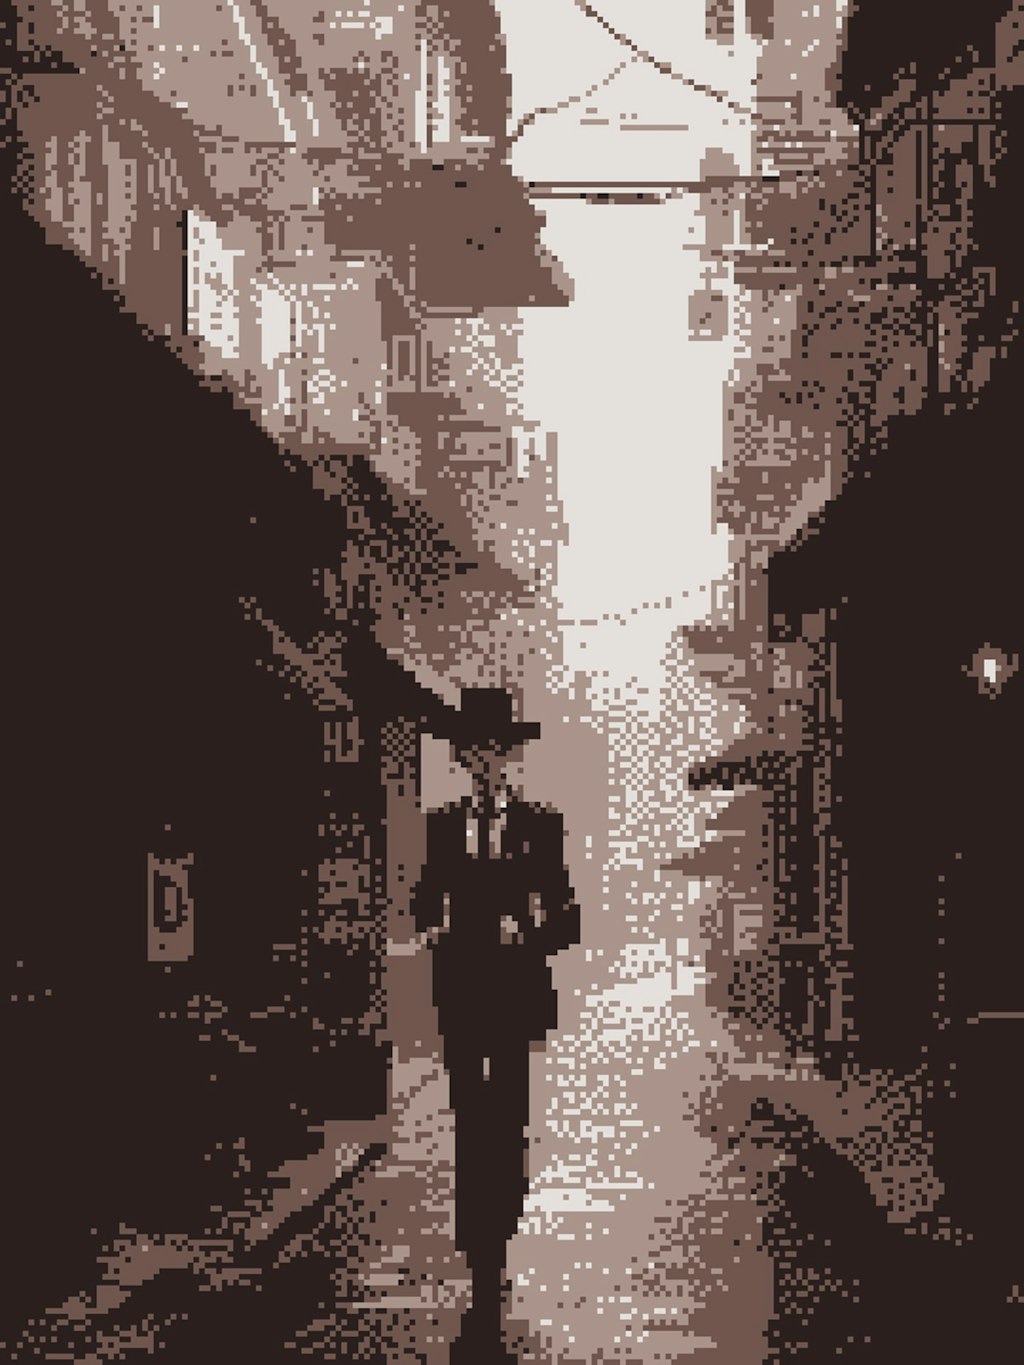 Gentleman in Alley